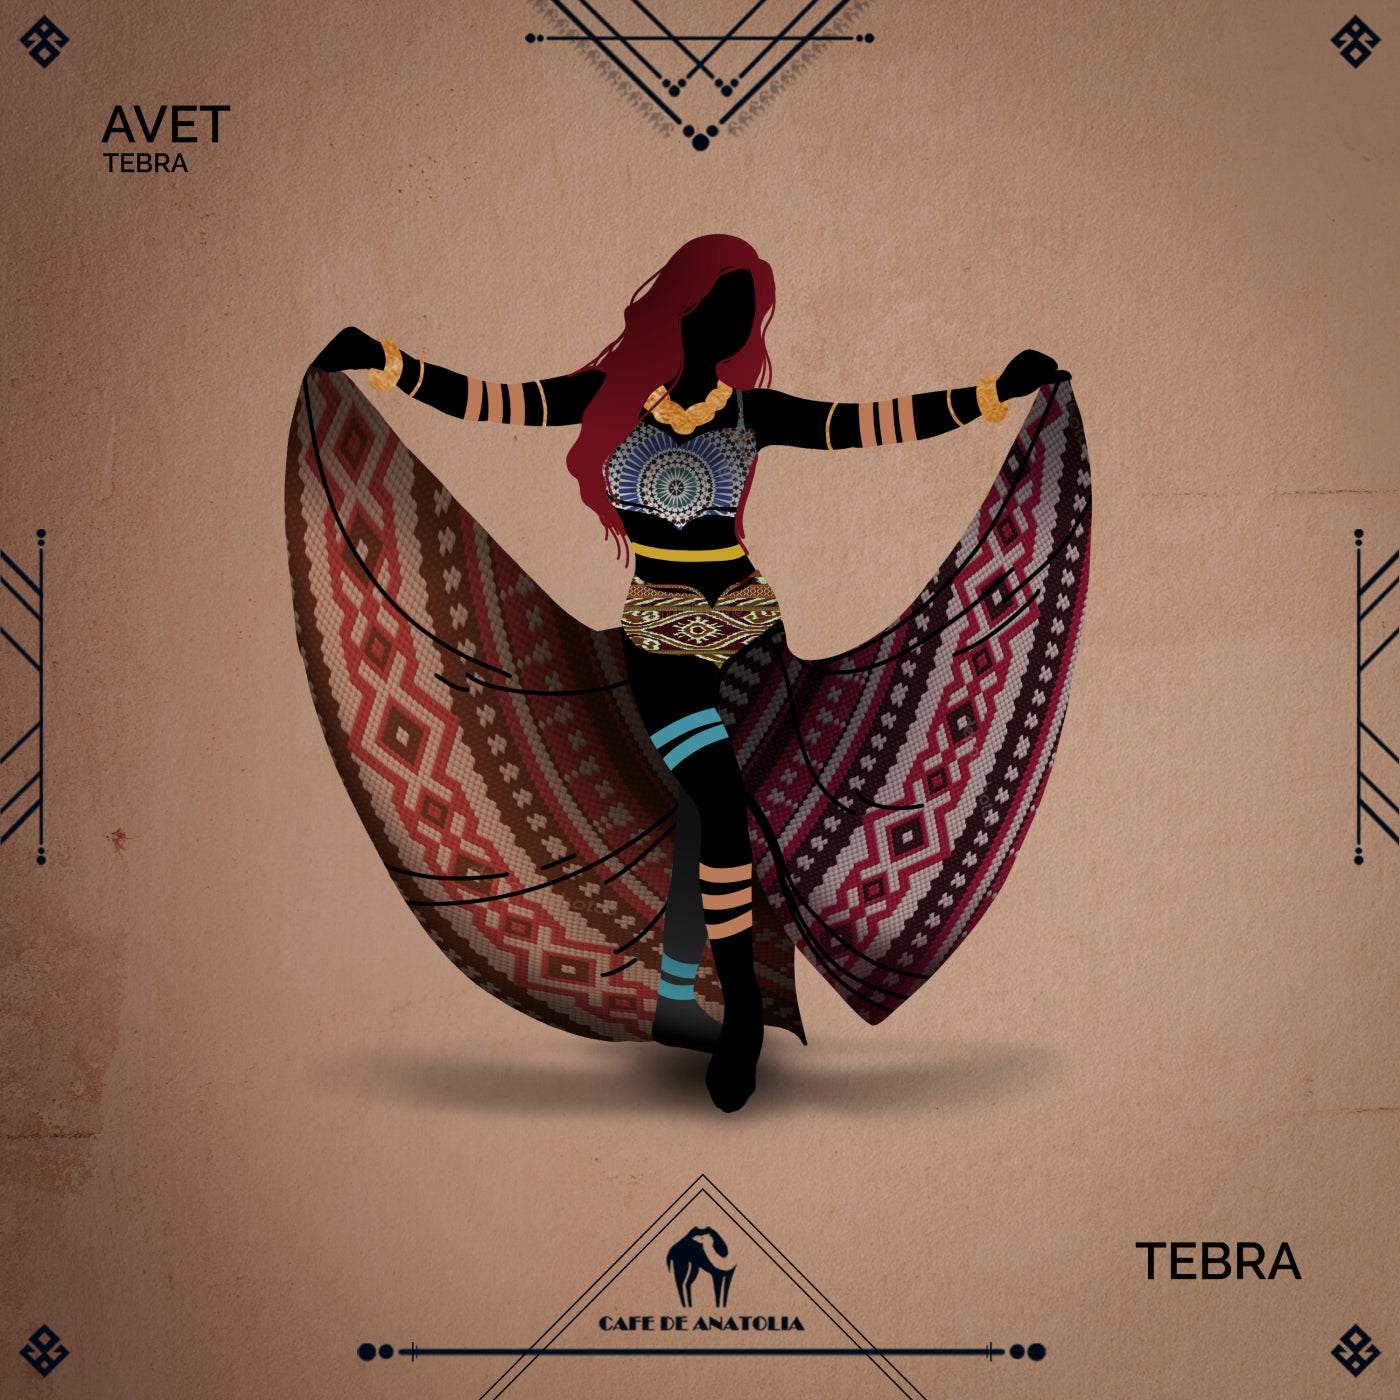 Tebra, Cafe De Anatolia - Avet  (Original Mix)